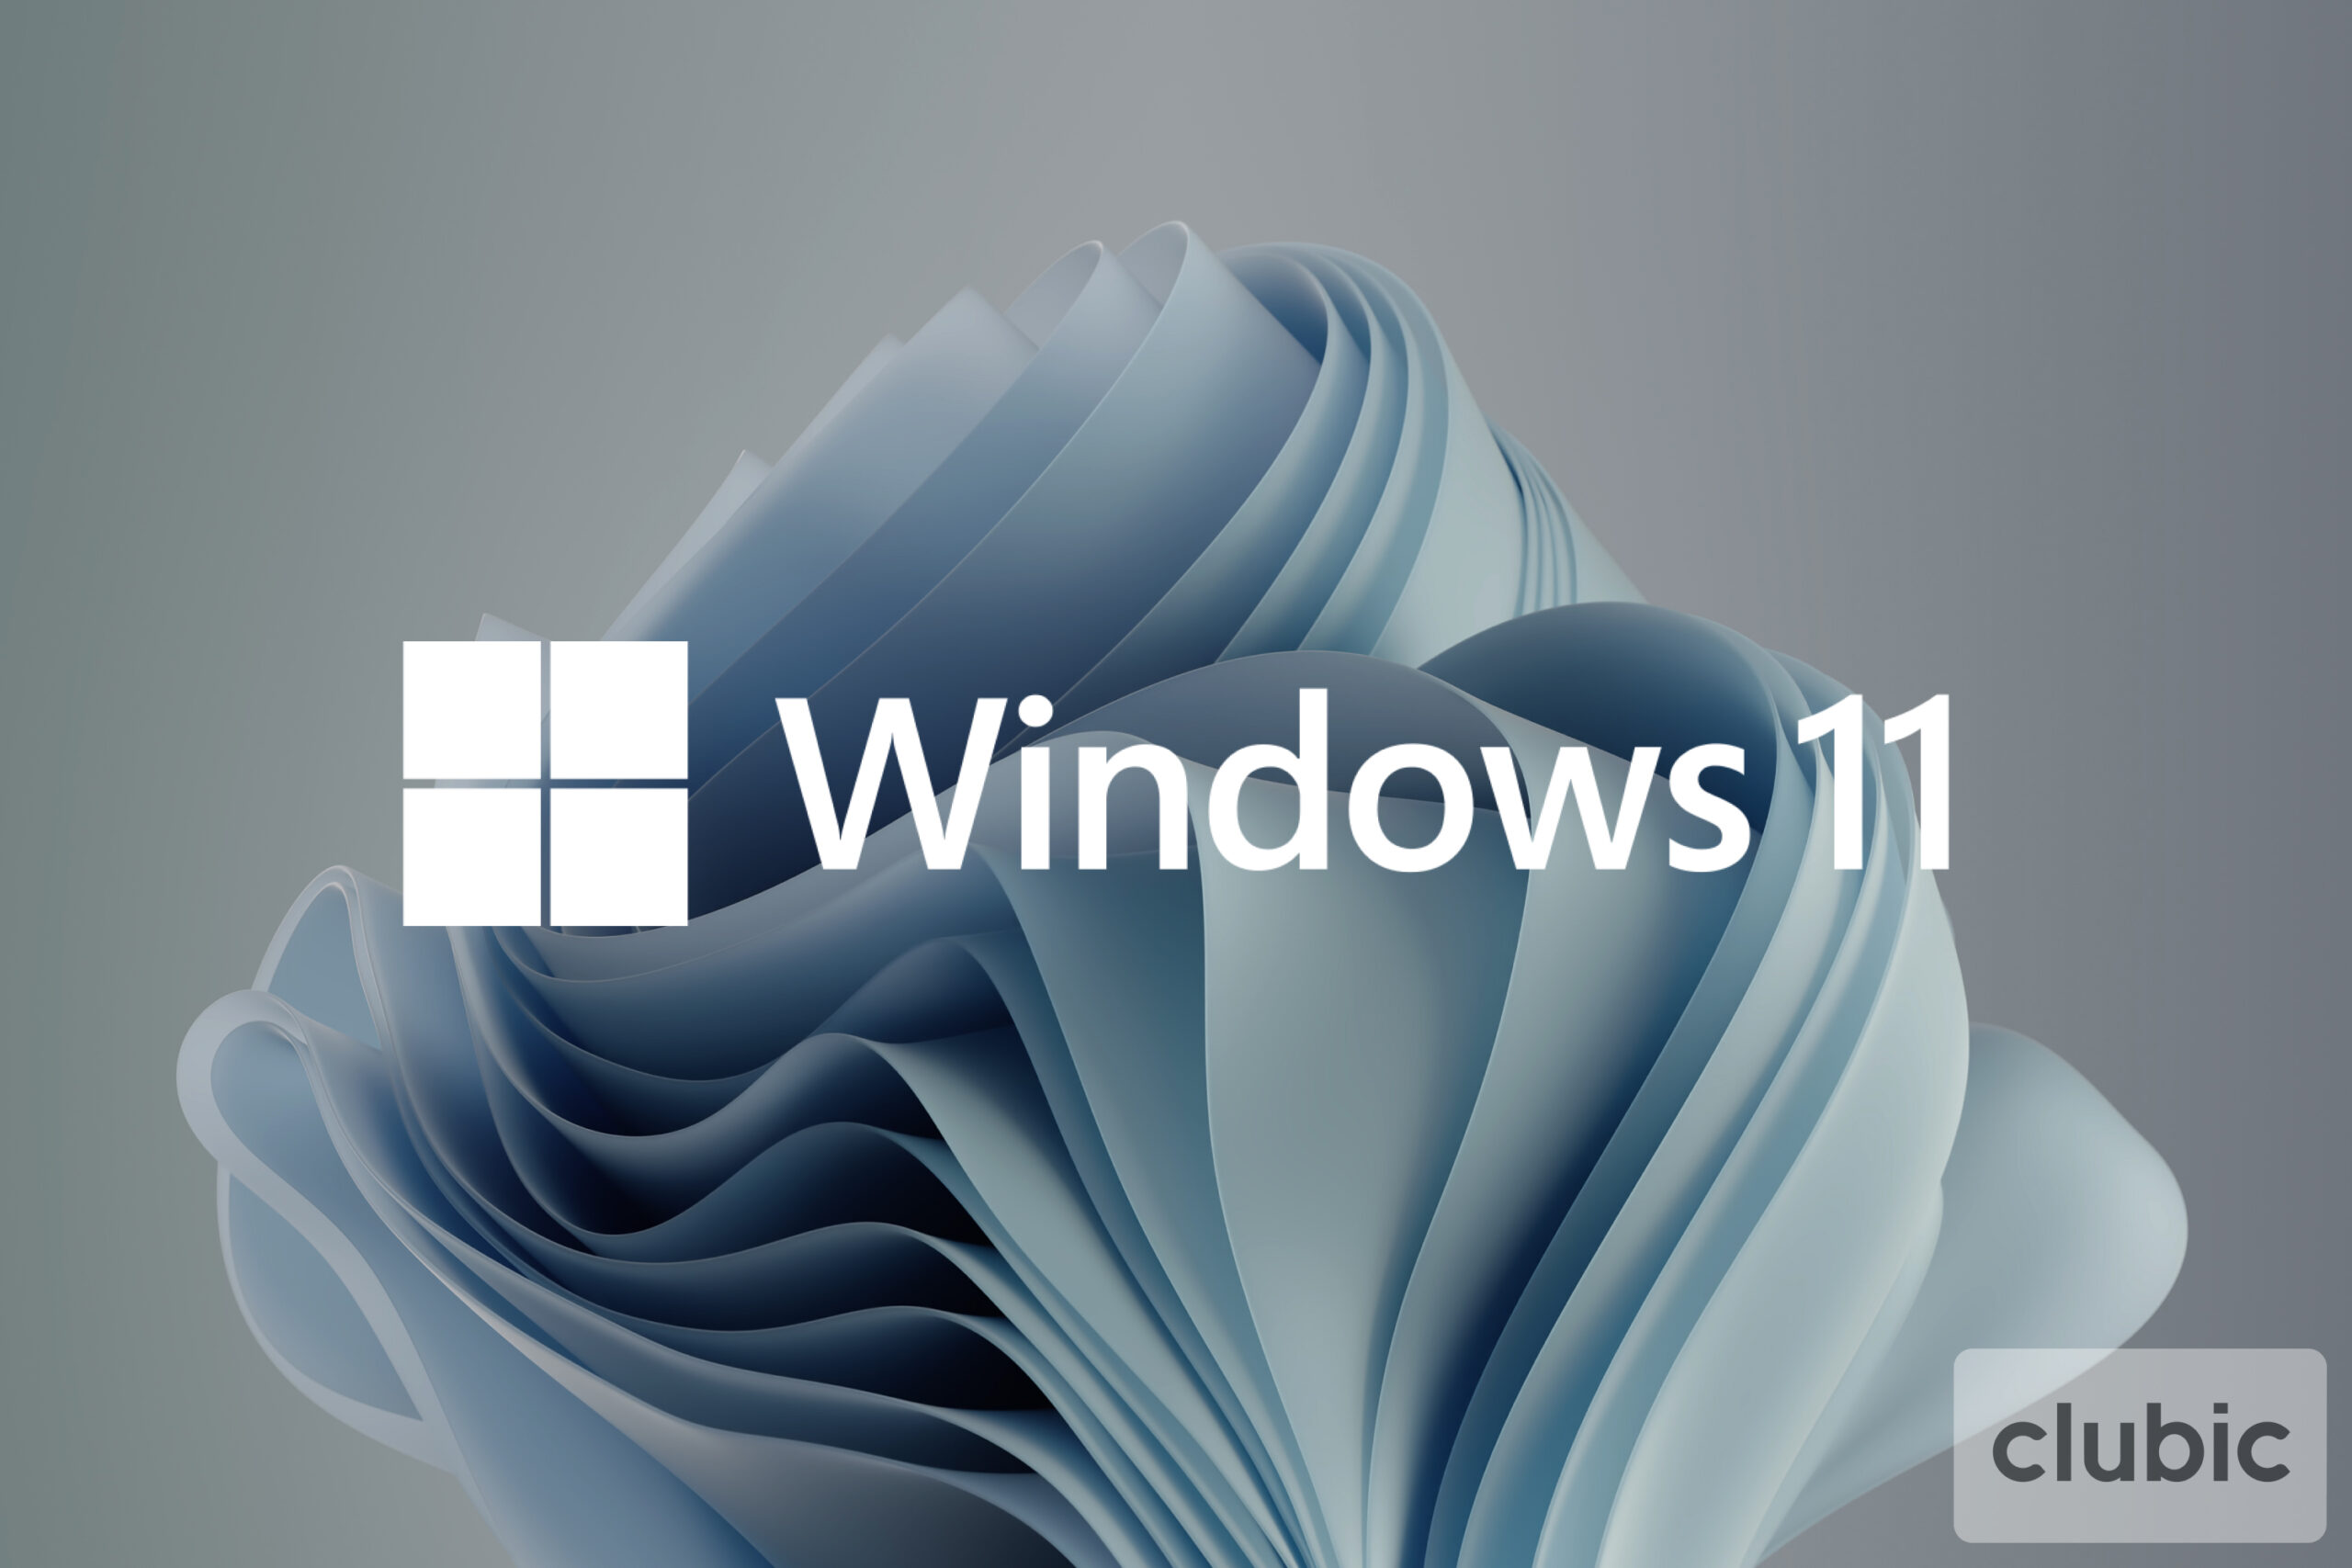 Windows 11: Ako bude vyzerať nový Poznámkový blok? Microsoft umožňuje uniknúť zachyteniam 43